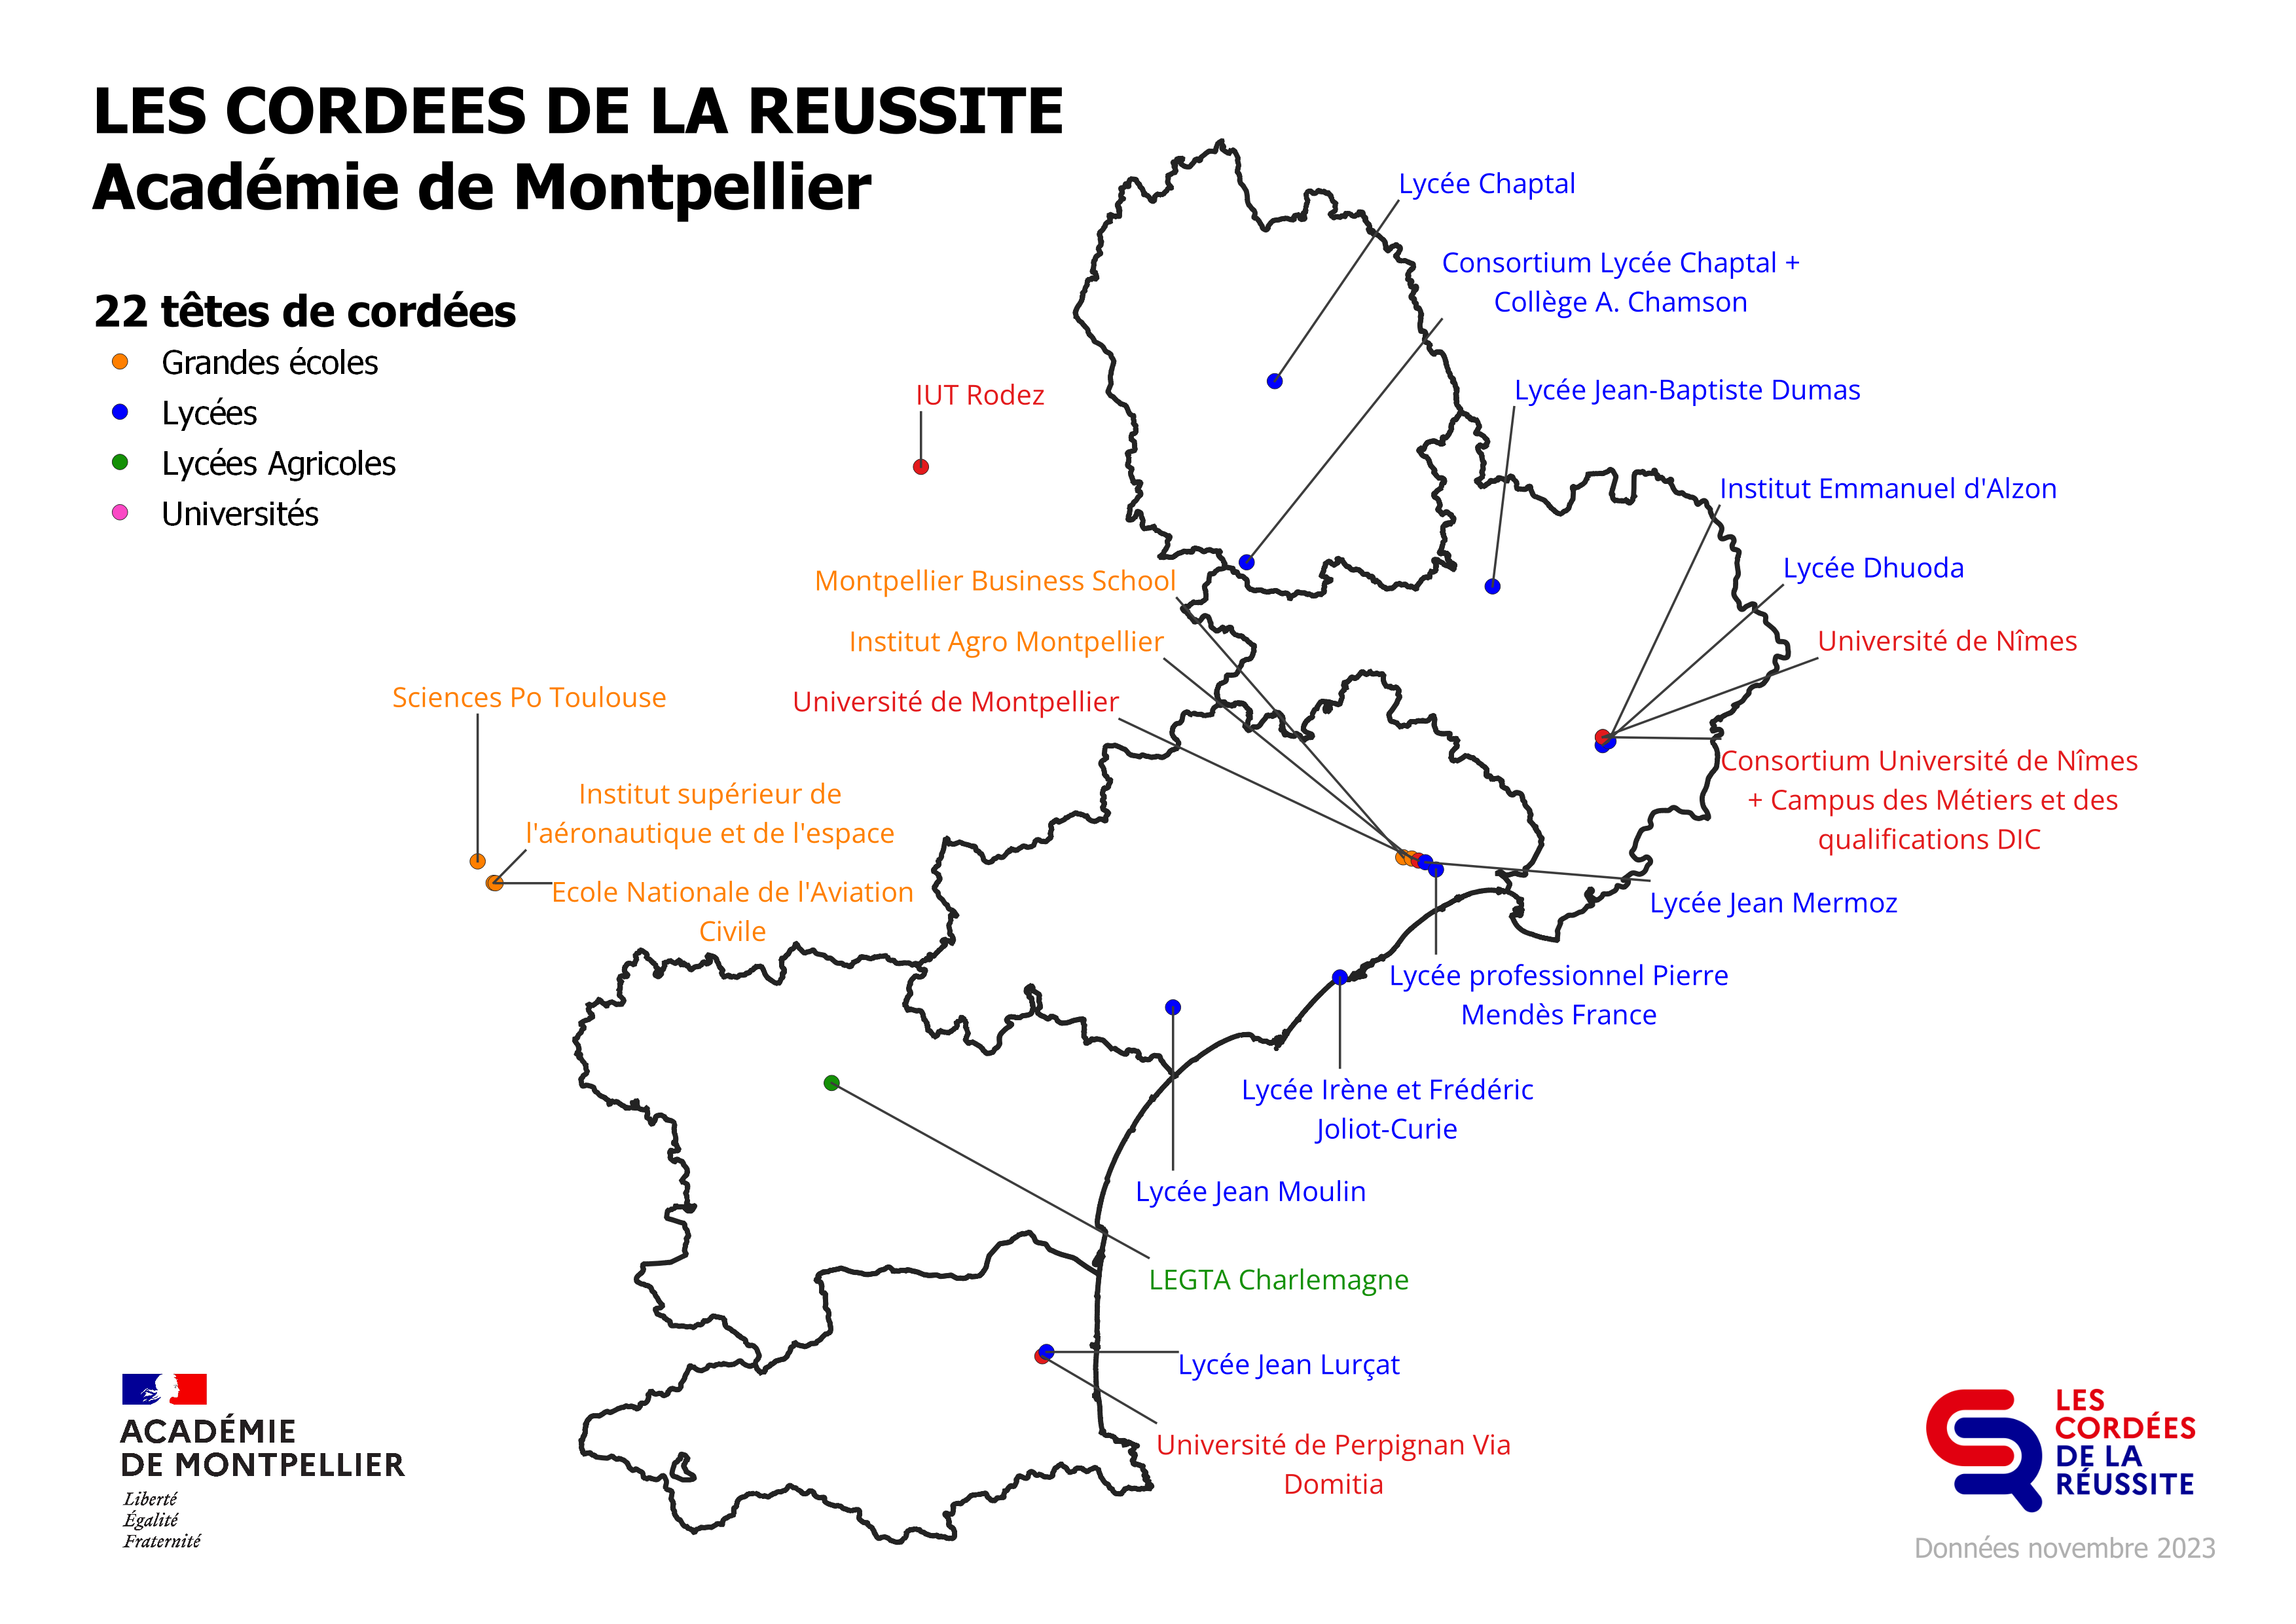 Carte géographique situant chacune des 22 cordées de la réussite qui interviennent sur l'académie de Montpellier. 1 cordée dans l'Aude (Carcassonne) 5 cordées dans le Gard (Alès et Nîmes) 8 cordées dans l'Hérault (Béziers, Montpellier et Sète) 2 cordées en Lozère (Mende et Meyrueis) + 1 cordée en Aveyron (Rodez) qui intervient exclusivement en Lozère 2 cordées dans les Pyrénées-Orientales (Perpignan) 3 cordées en Haute-Garonne (Toulouse) qui interviennent sur les départements de l'Aude, de l'Hérault et des 